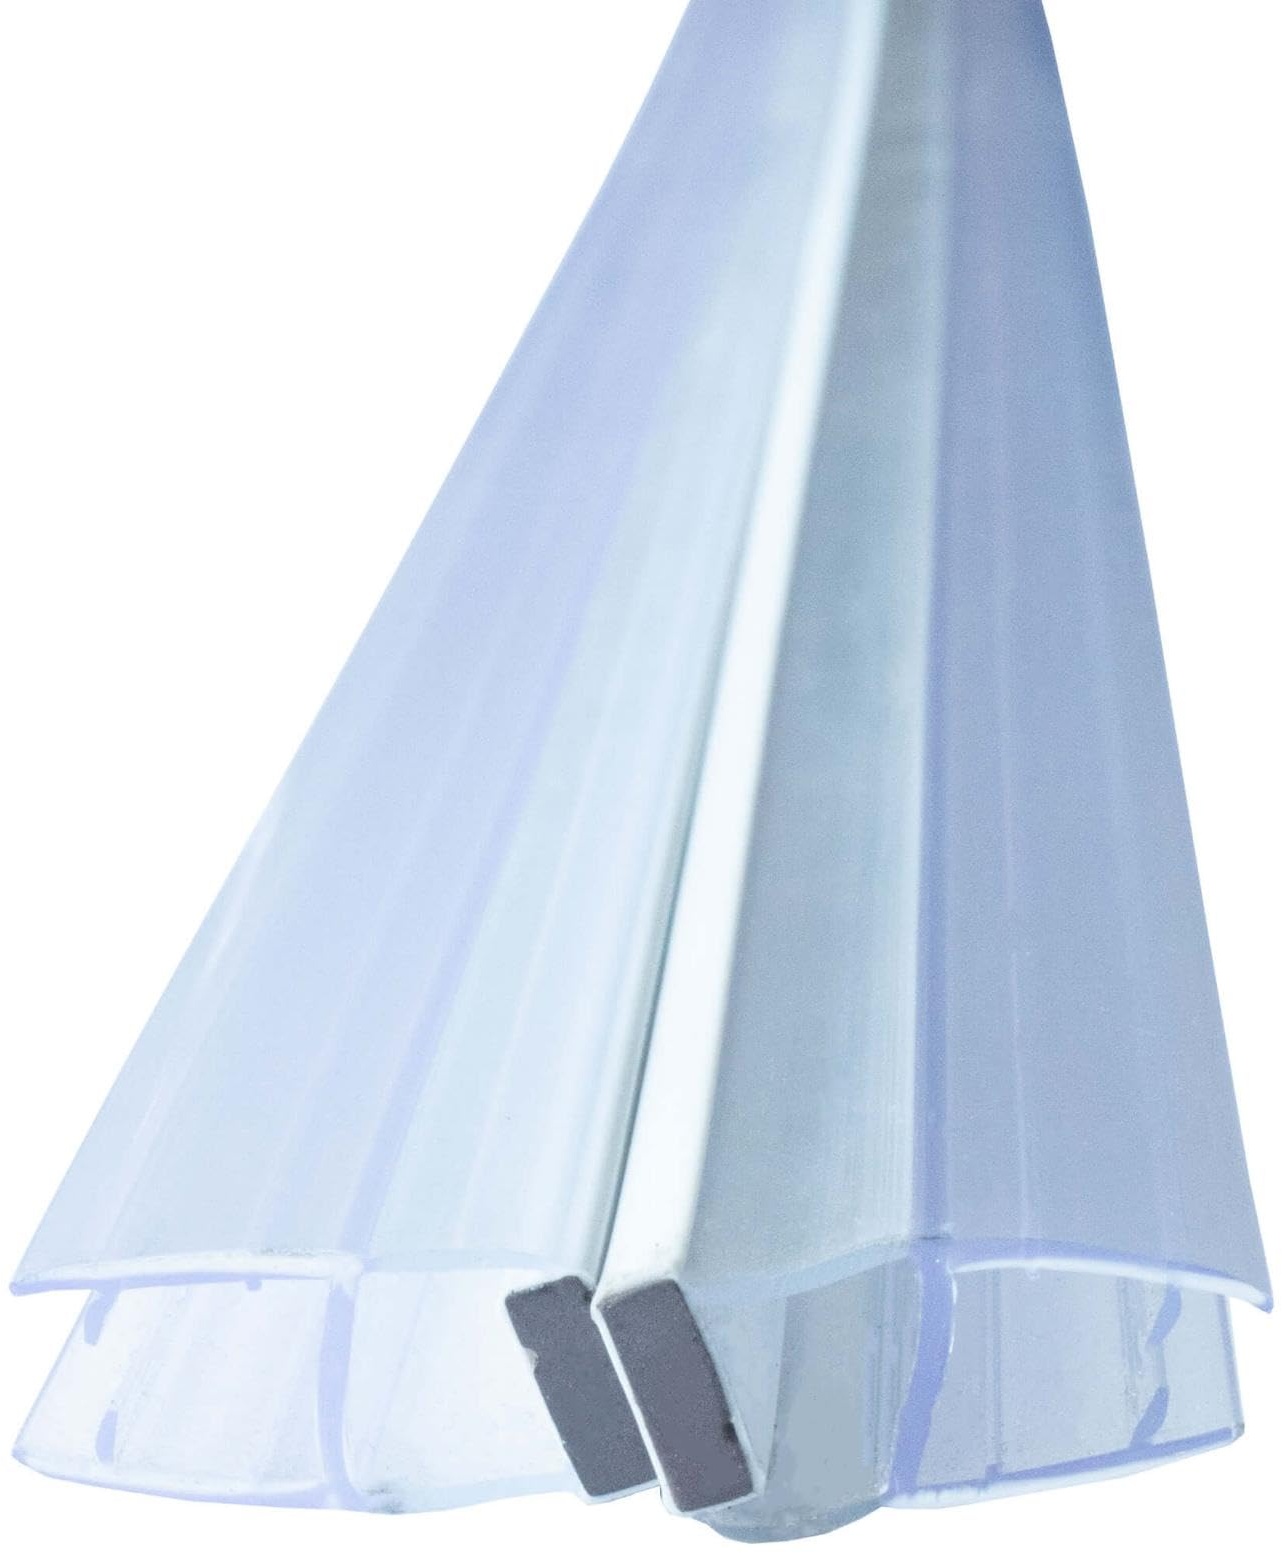 Duschdichtung Magnetdichtung für Duschtüren Transparent 6mm Glasstärke Schließwinkel von 135 und 180 Grad, versetzt, PVC Duschlippe